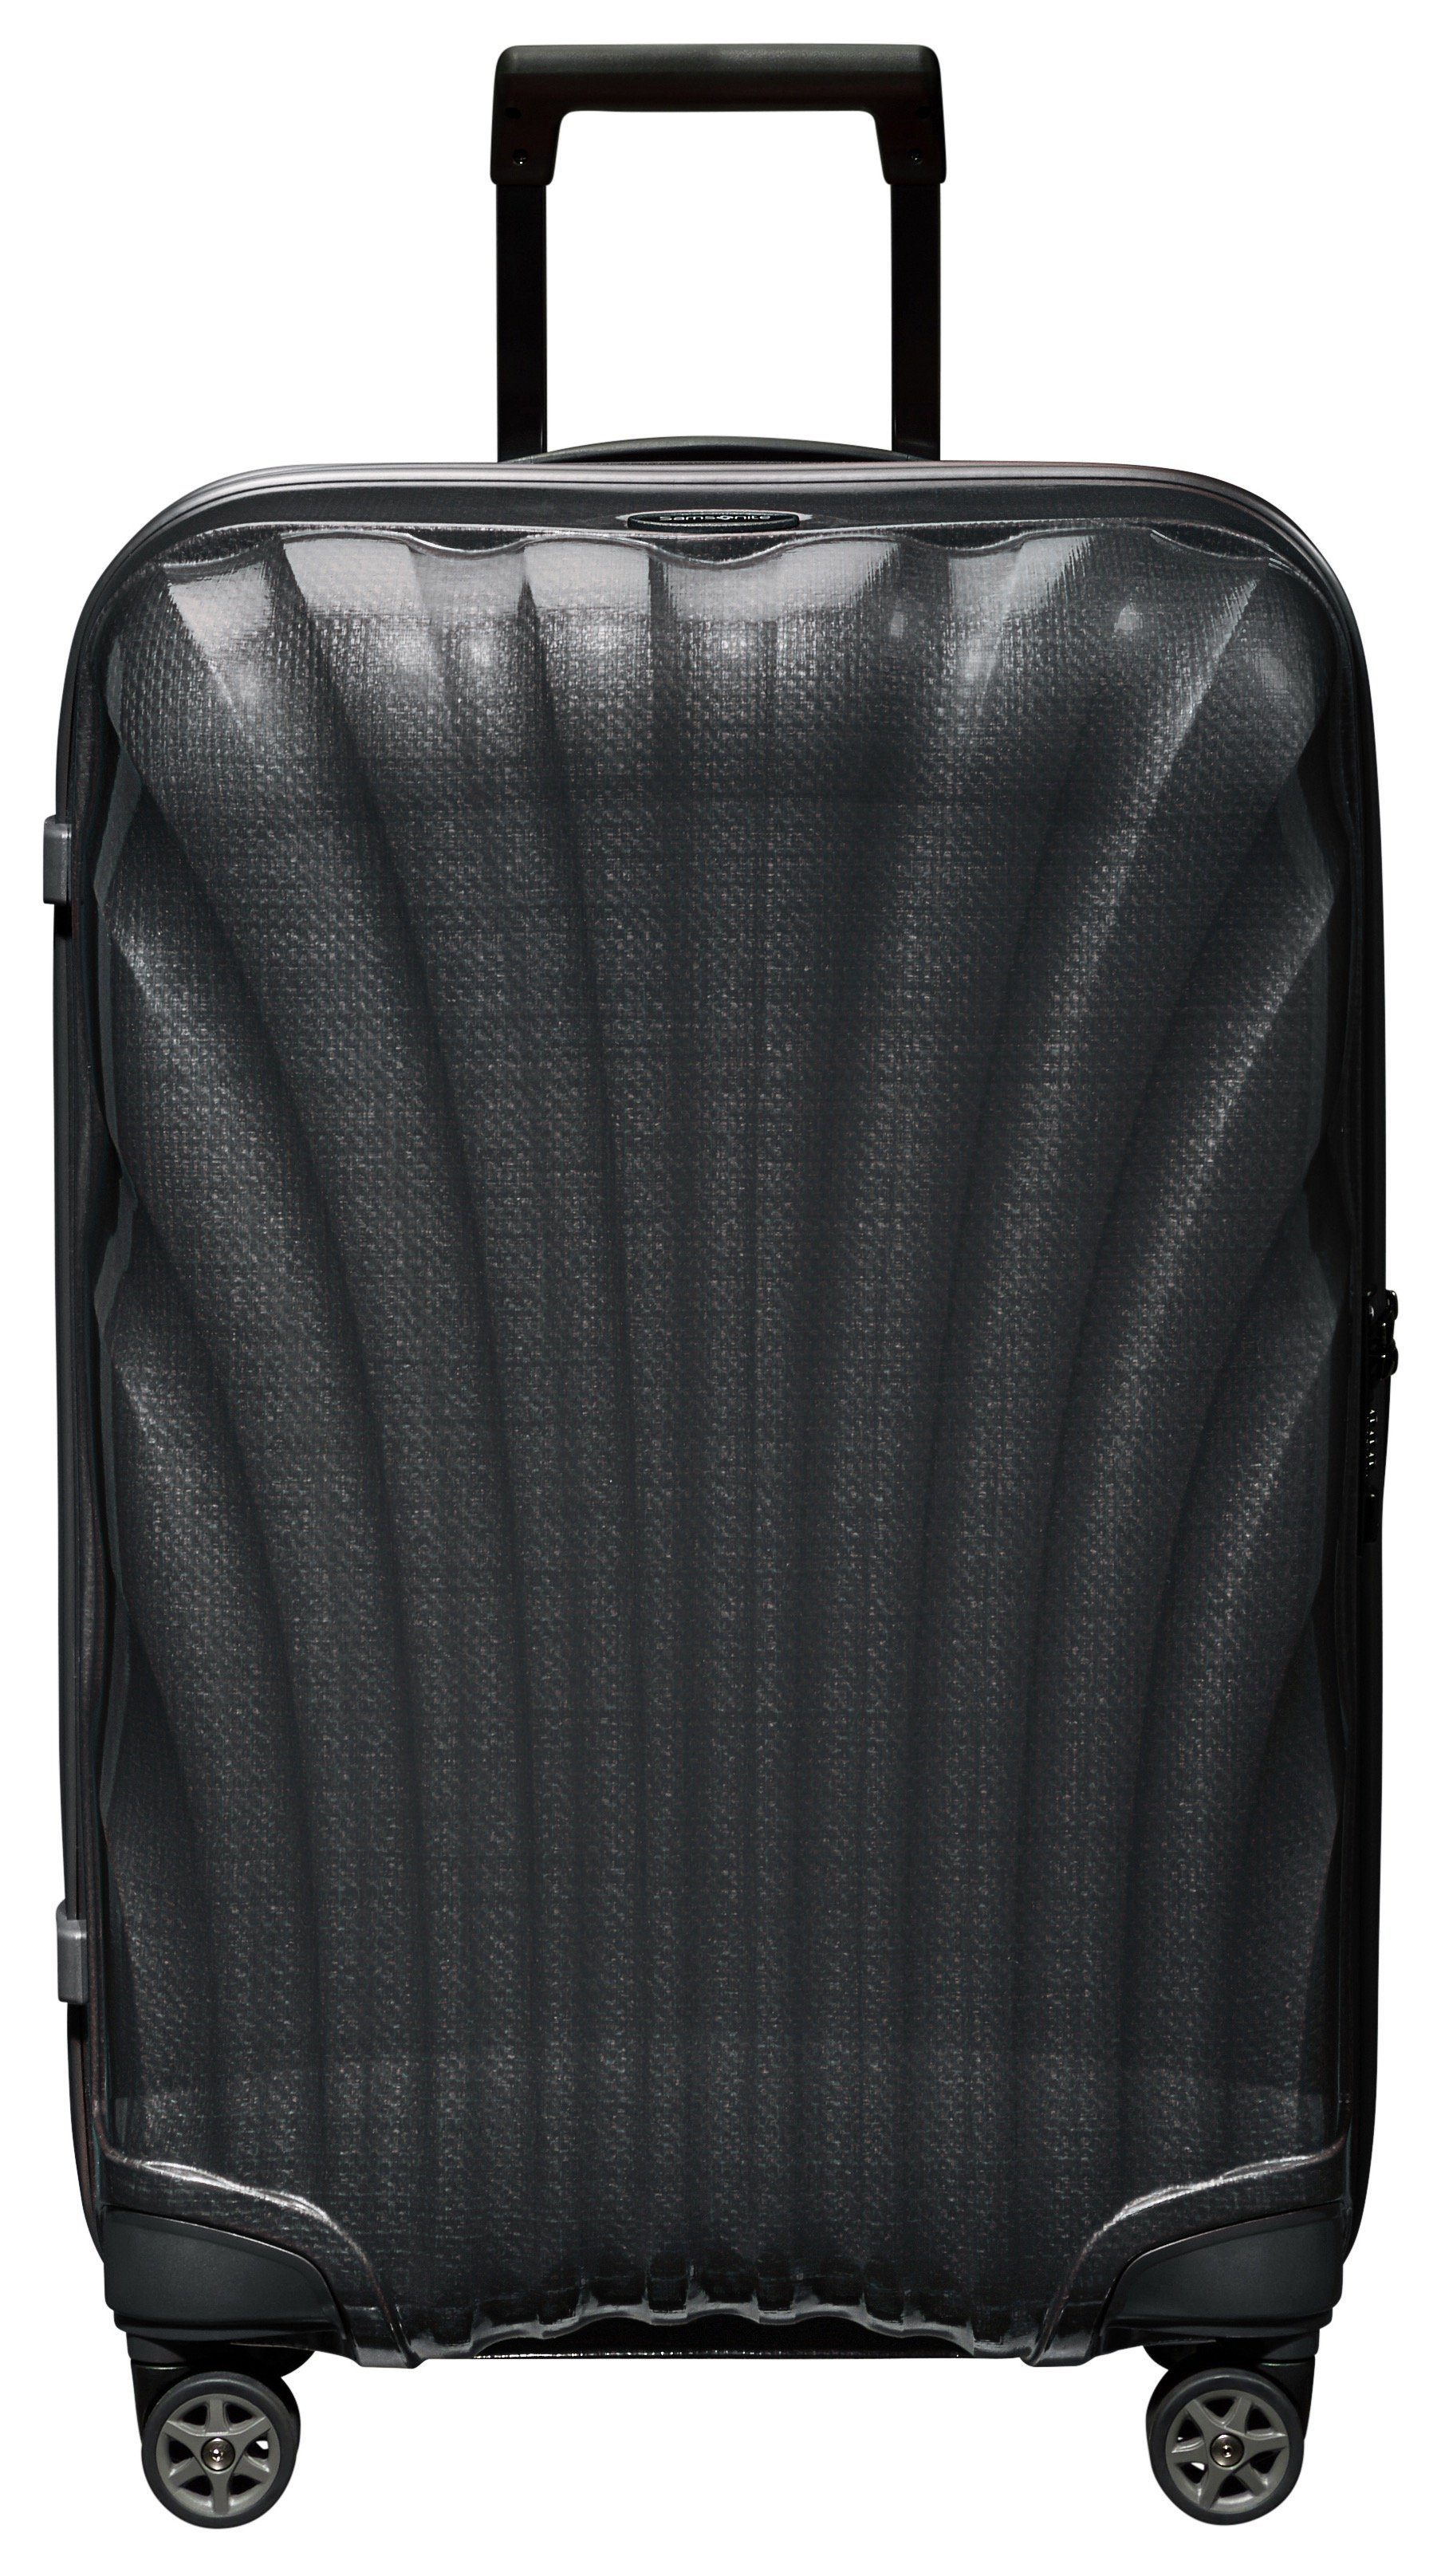 Samsonite Koffer schwarz C-LITE 69, Rollen 4